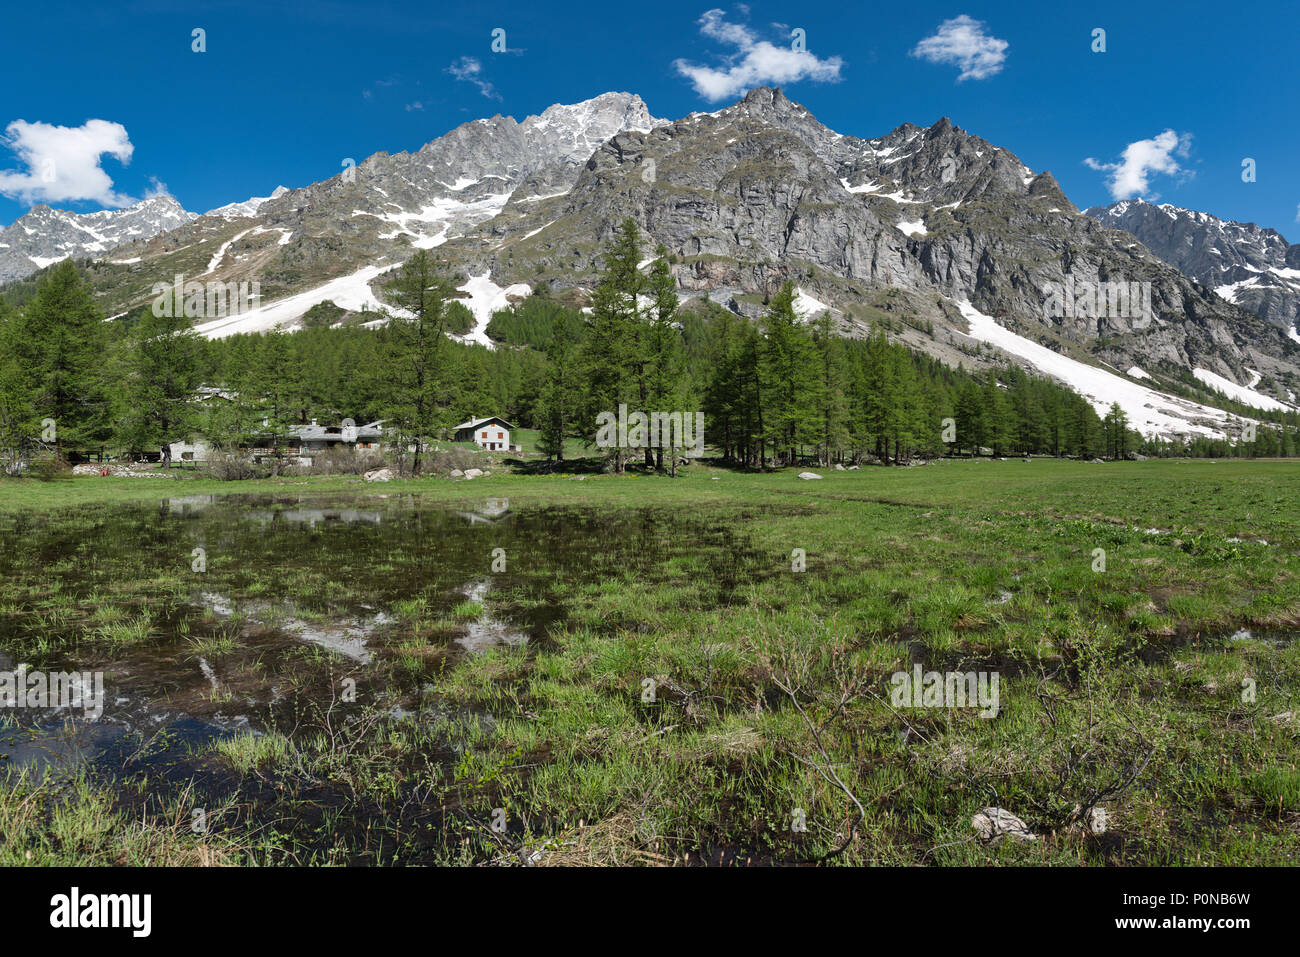 Hermoso paisaje de Val Ferret en la temporada de primavera con lago, Little Village, alerces y montañas Grandes Jorasses en el fondo, Italia Foto de stock